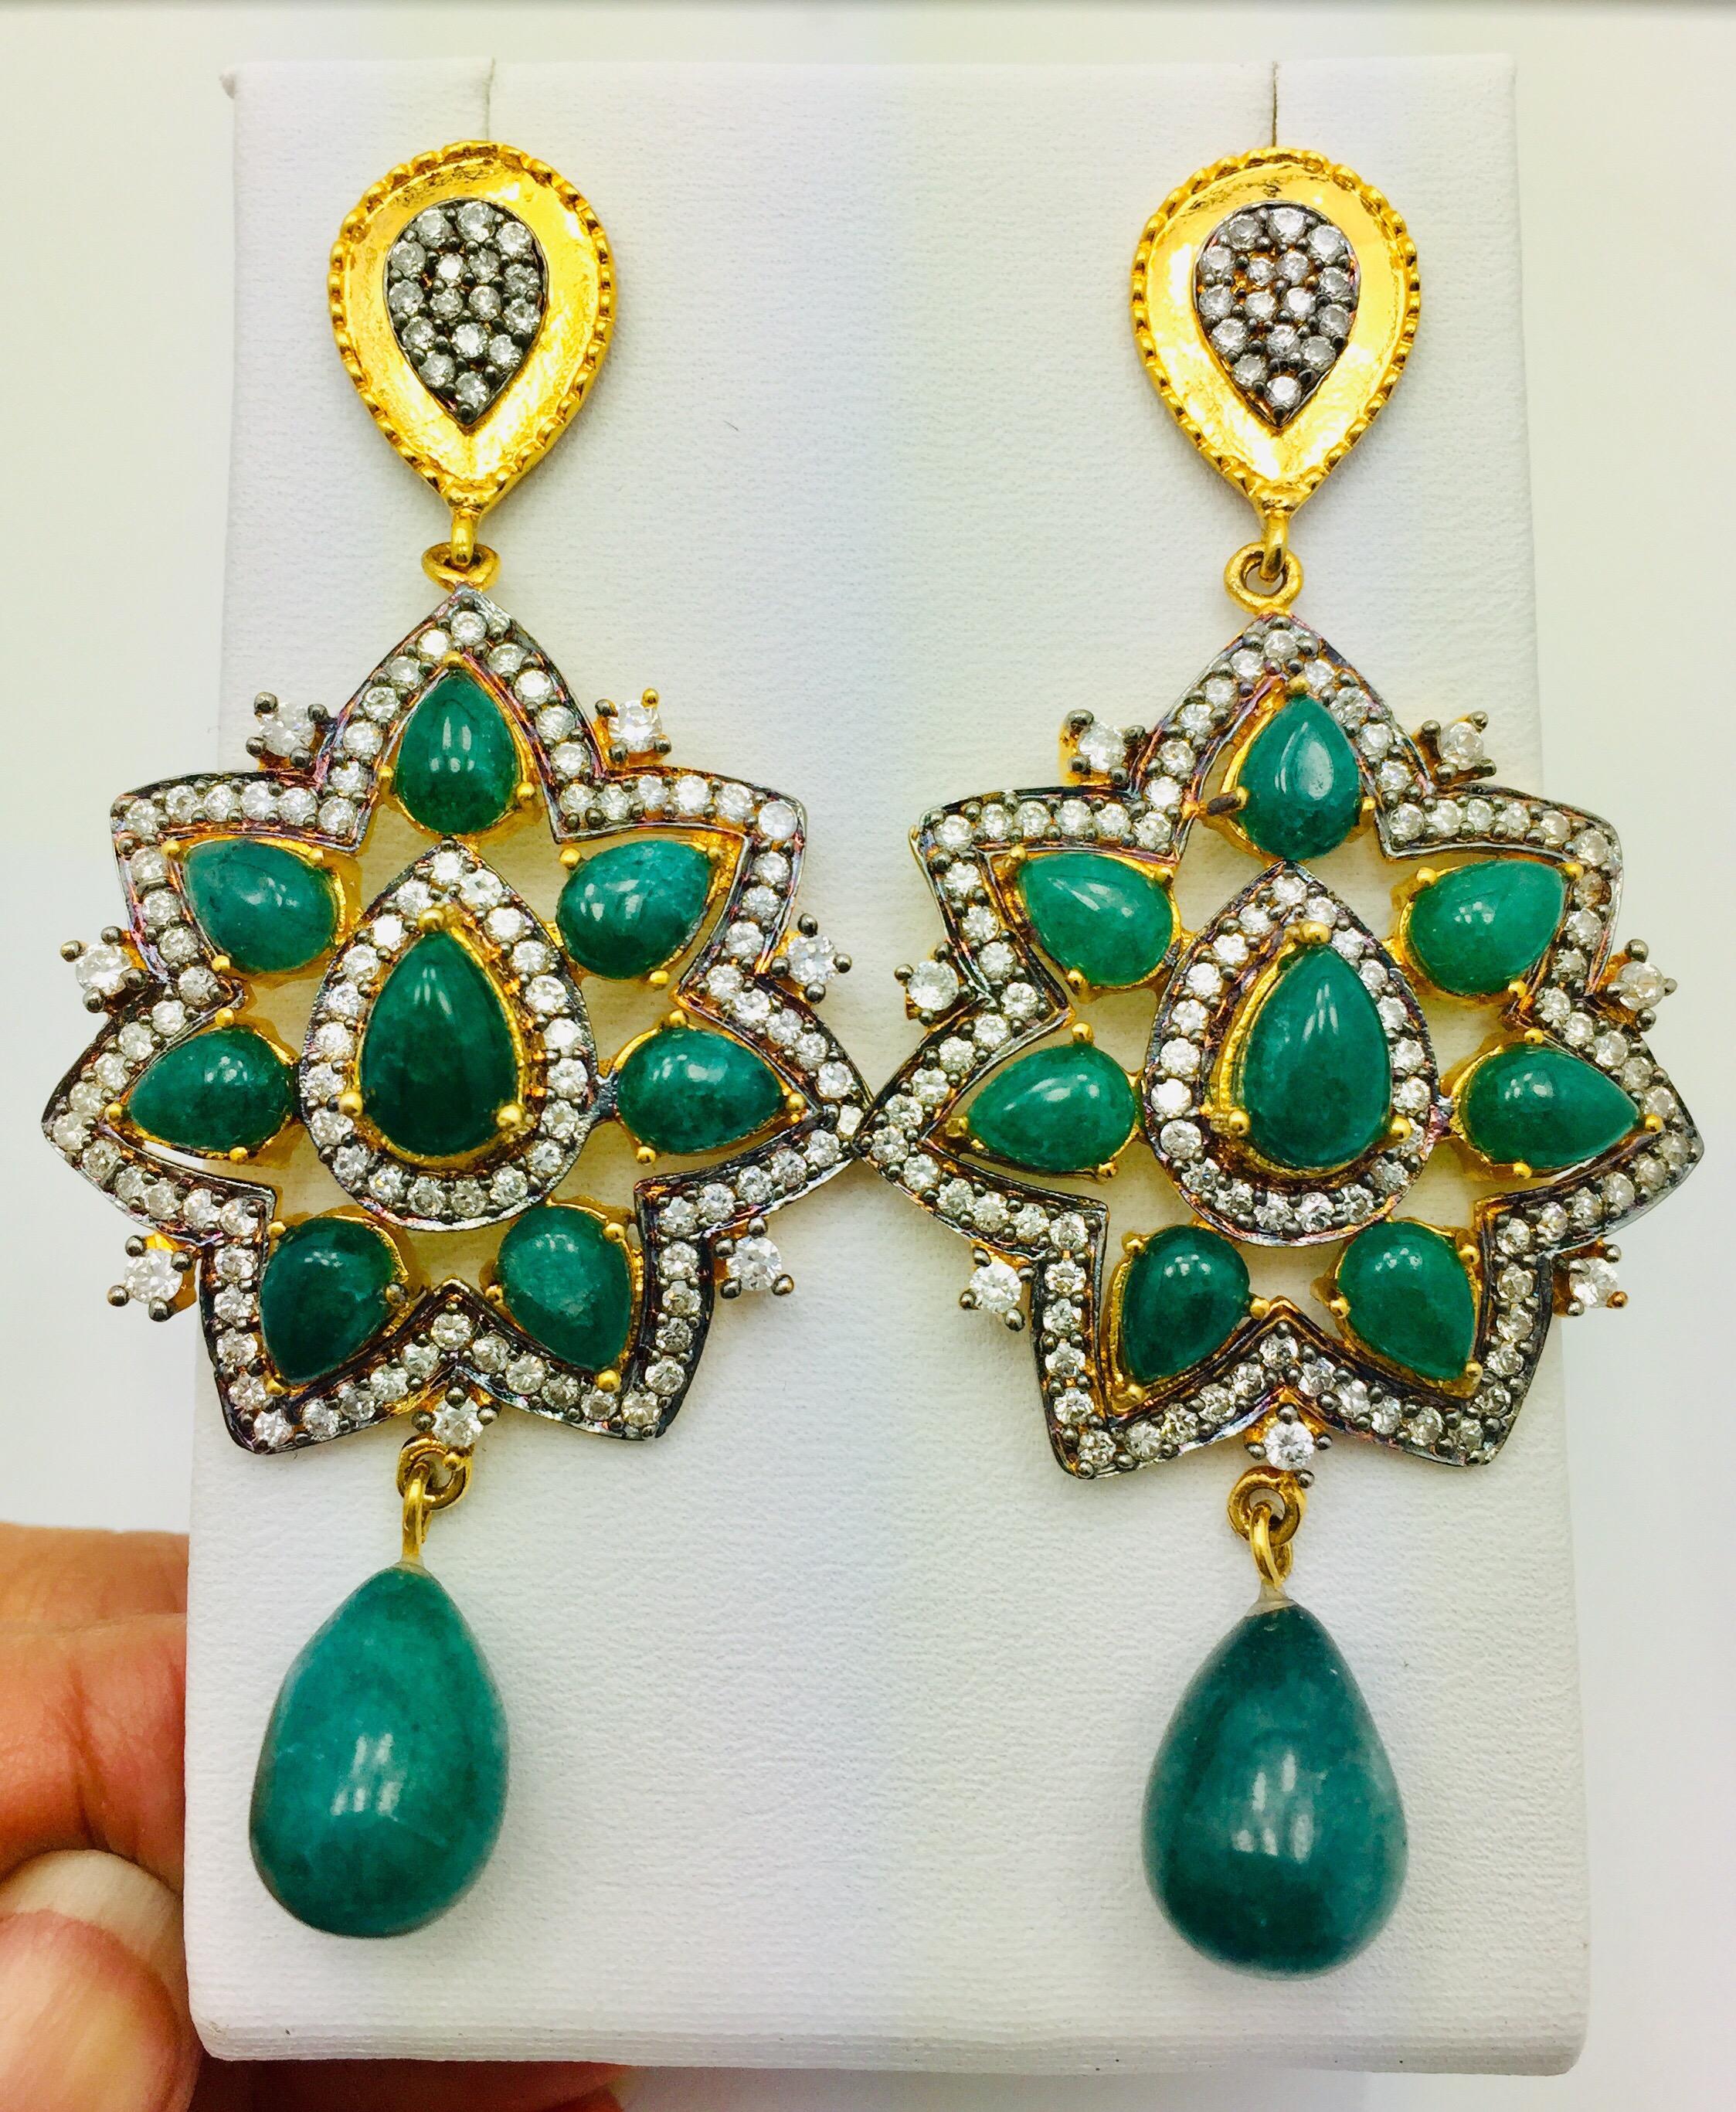 Women's Meghna Jewels Ahalei Earrings Green Quartz Cubic Zircon - As seen in Gossip girl